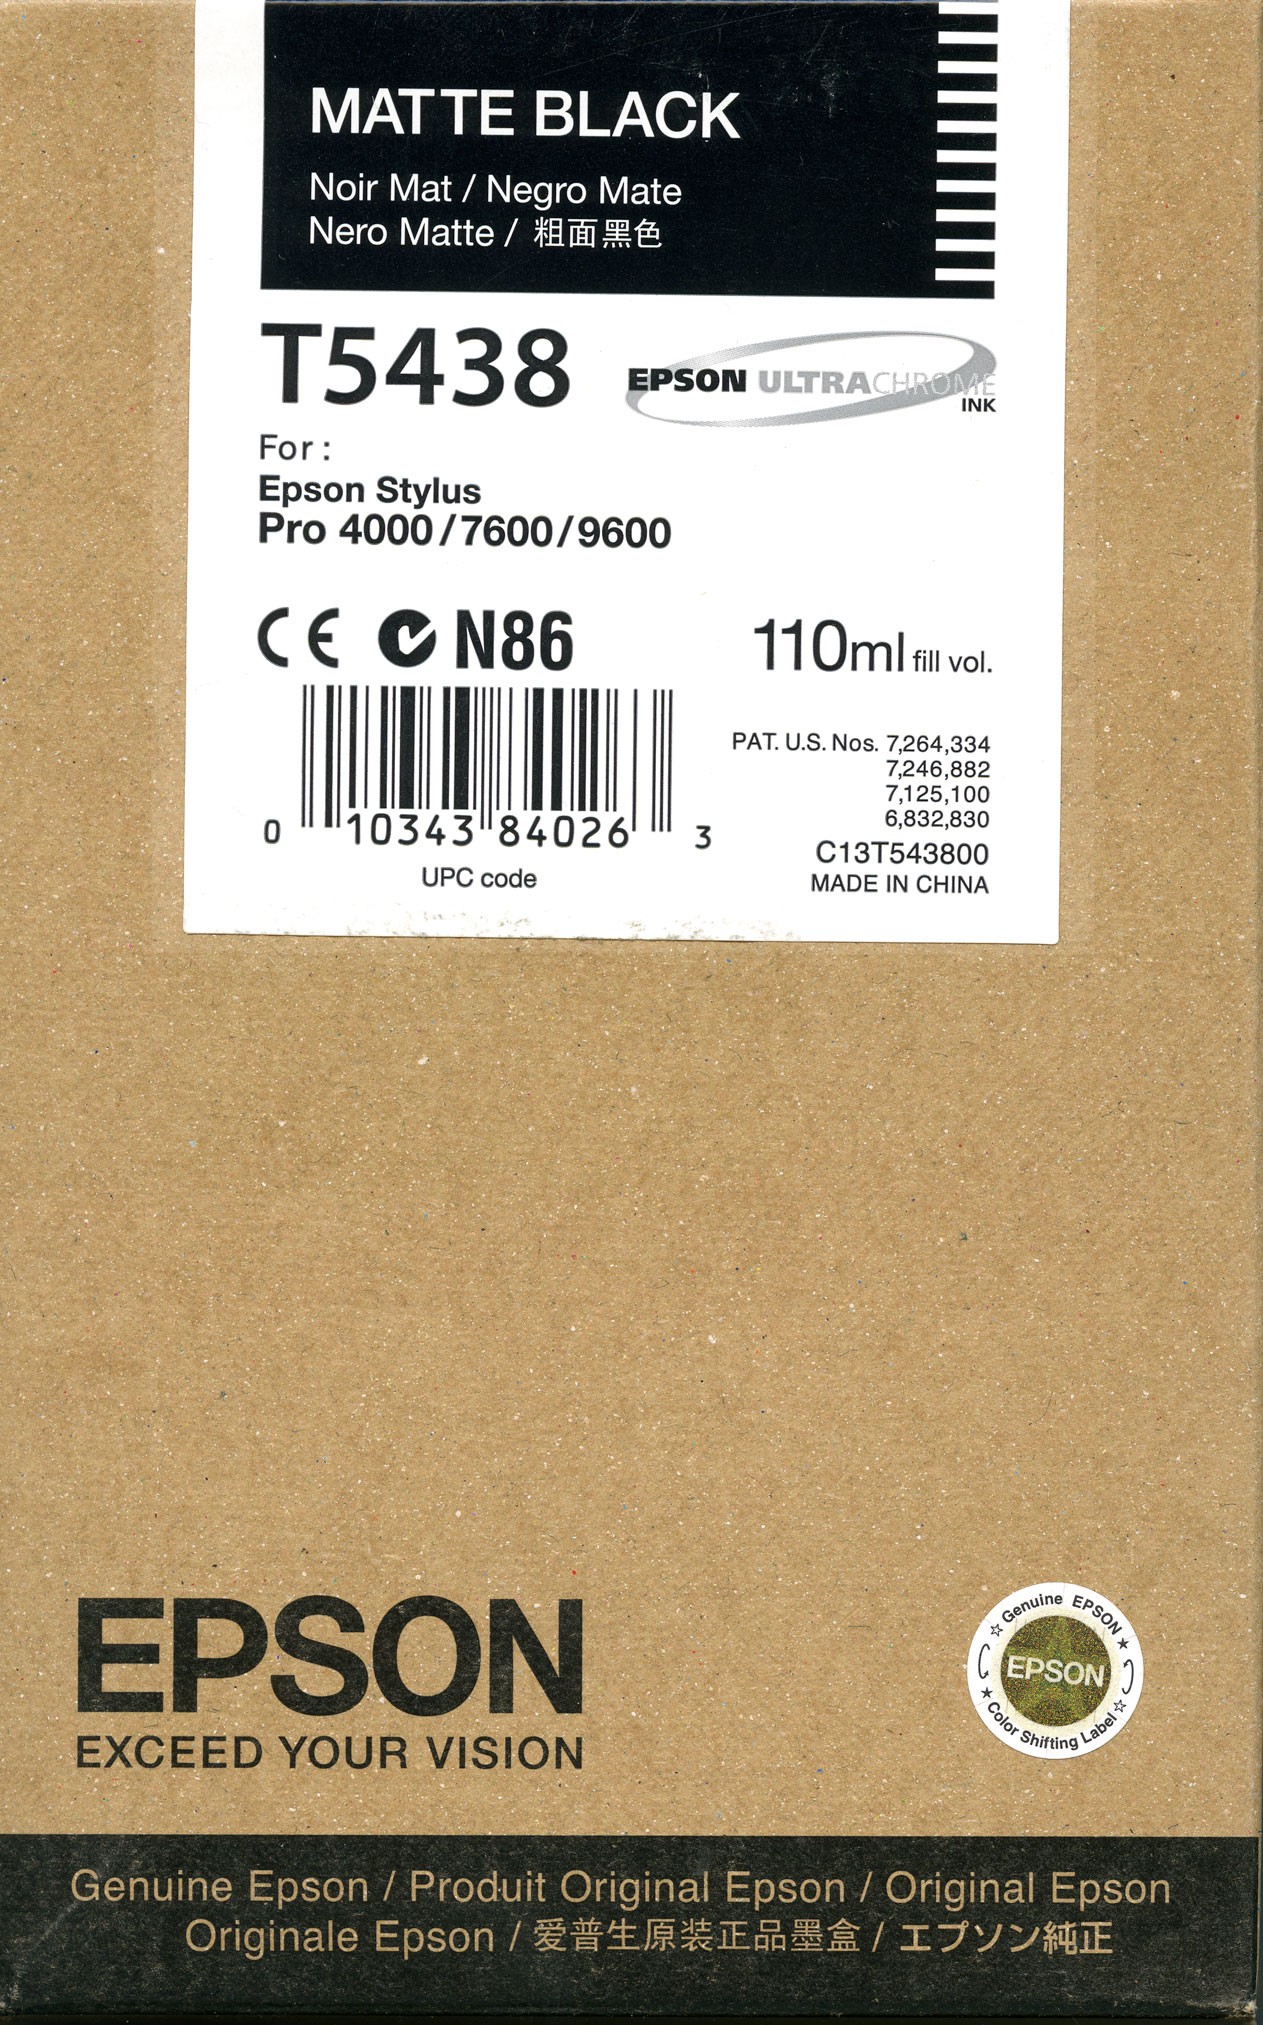 Epson T543800  Cartuccia nero/matte, capacit� 110ml 